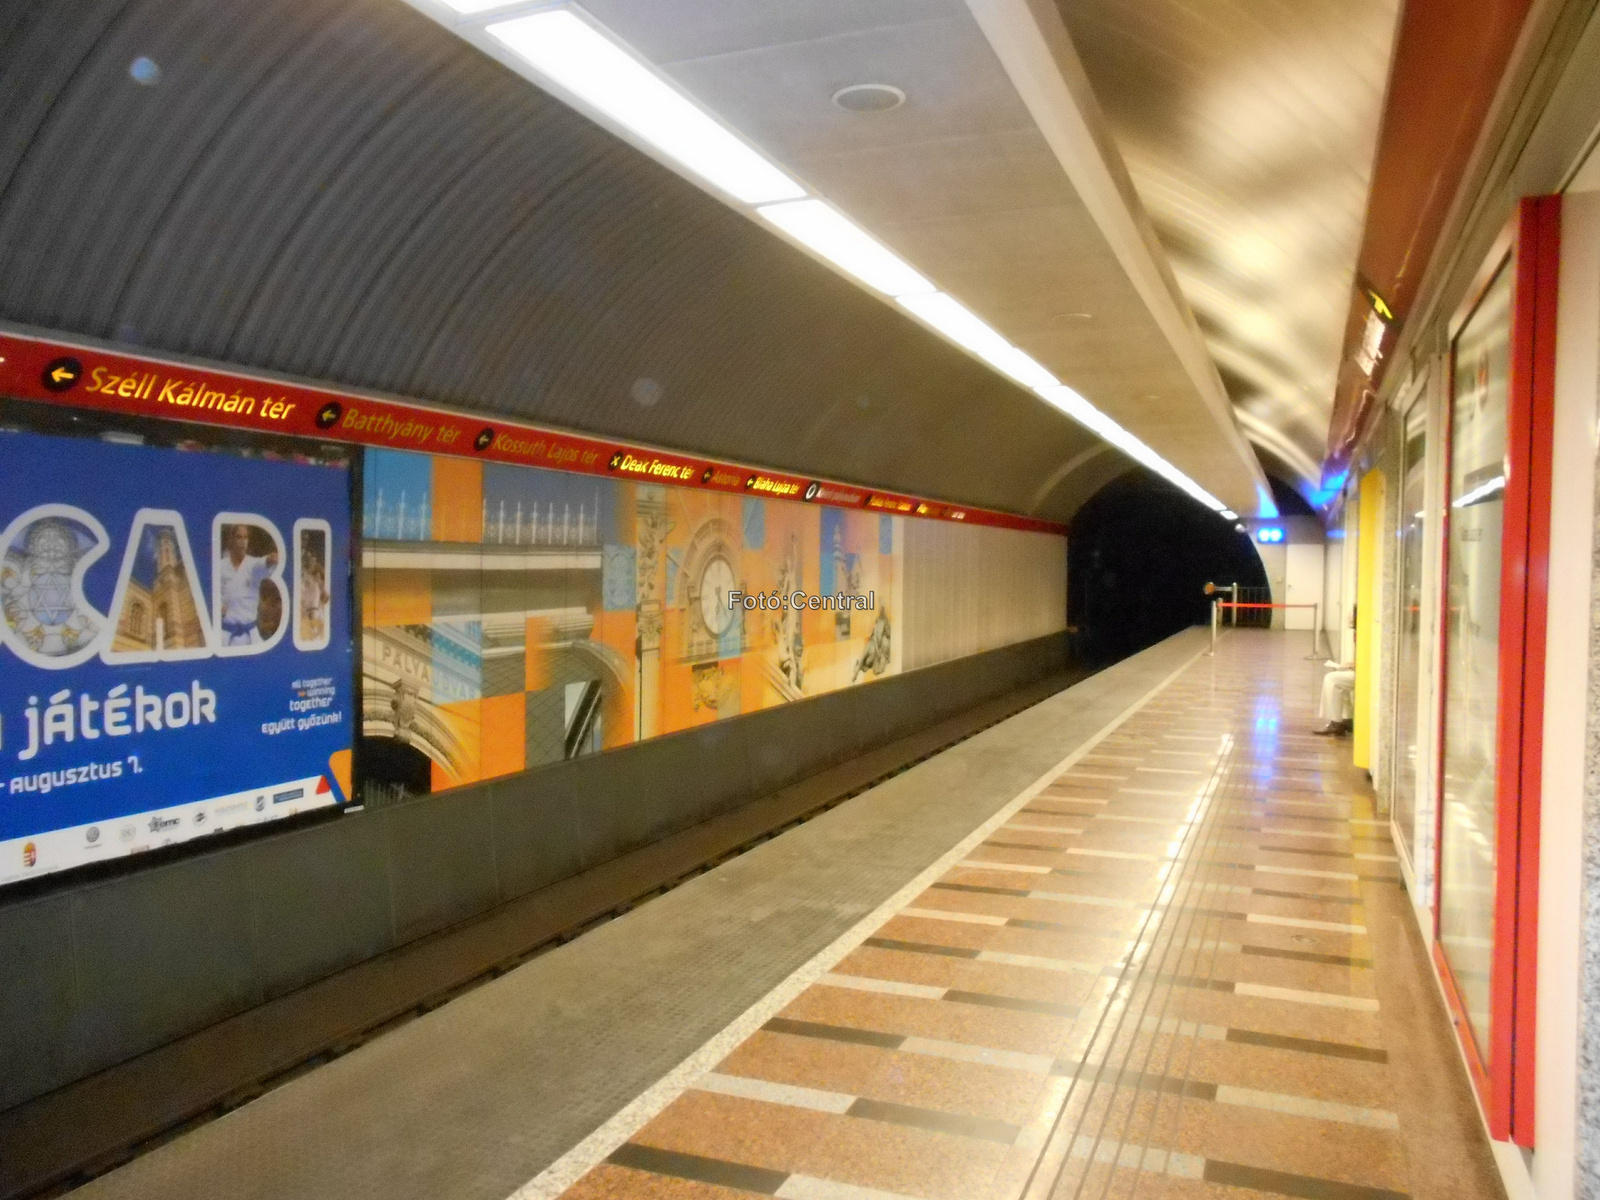 A Széll Kálmán téri metróállomás.DSCN6559